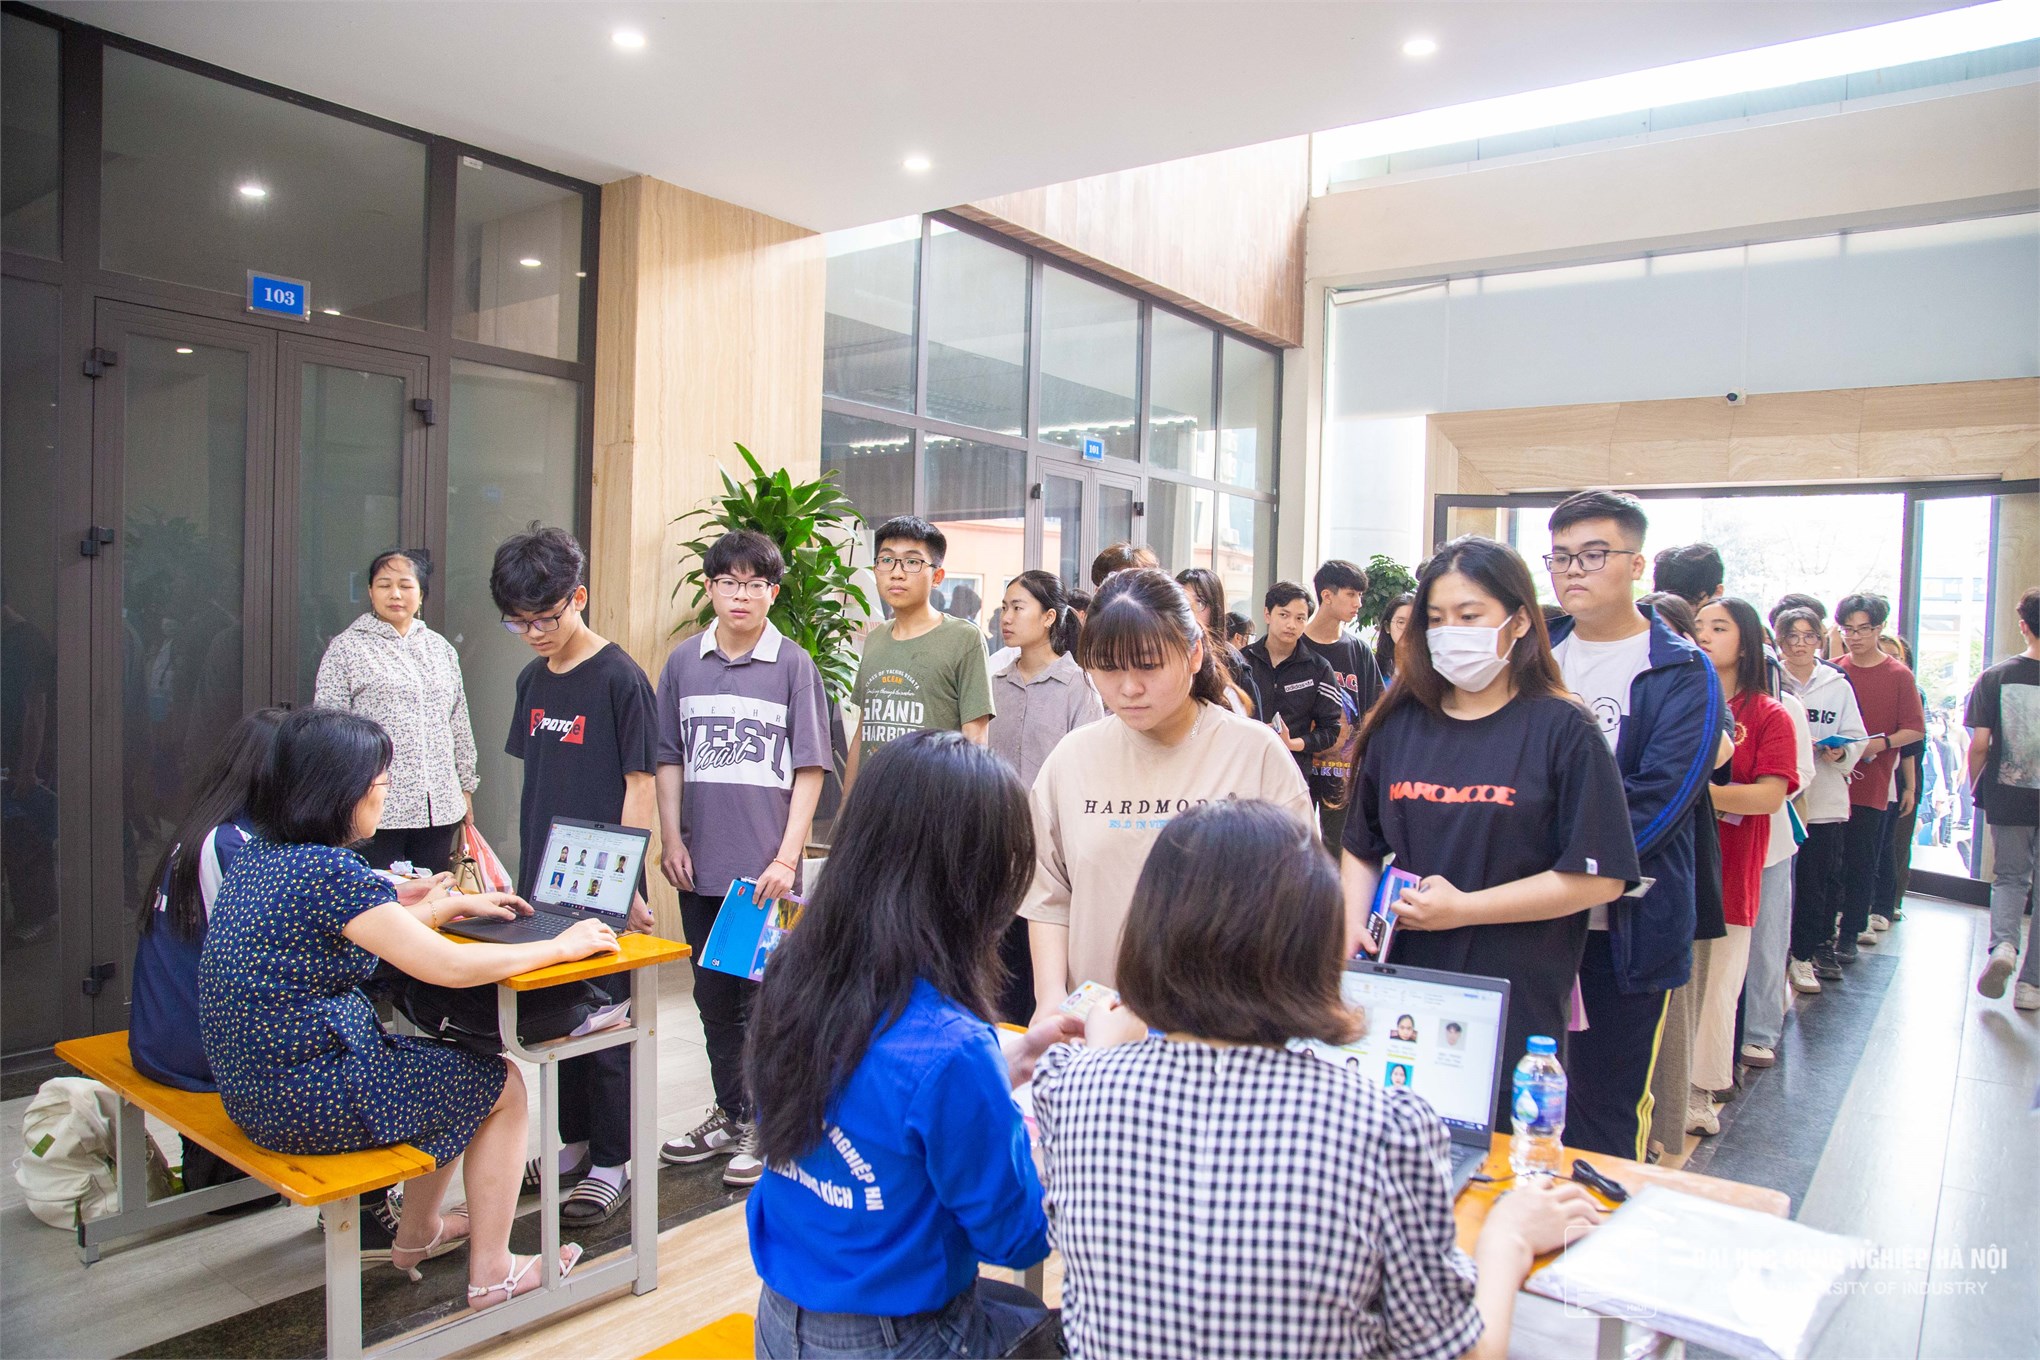 Đại học Công nghiệp Hà Nội phối hợp tổ chức đánh giá năng lực học sinh THPT